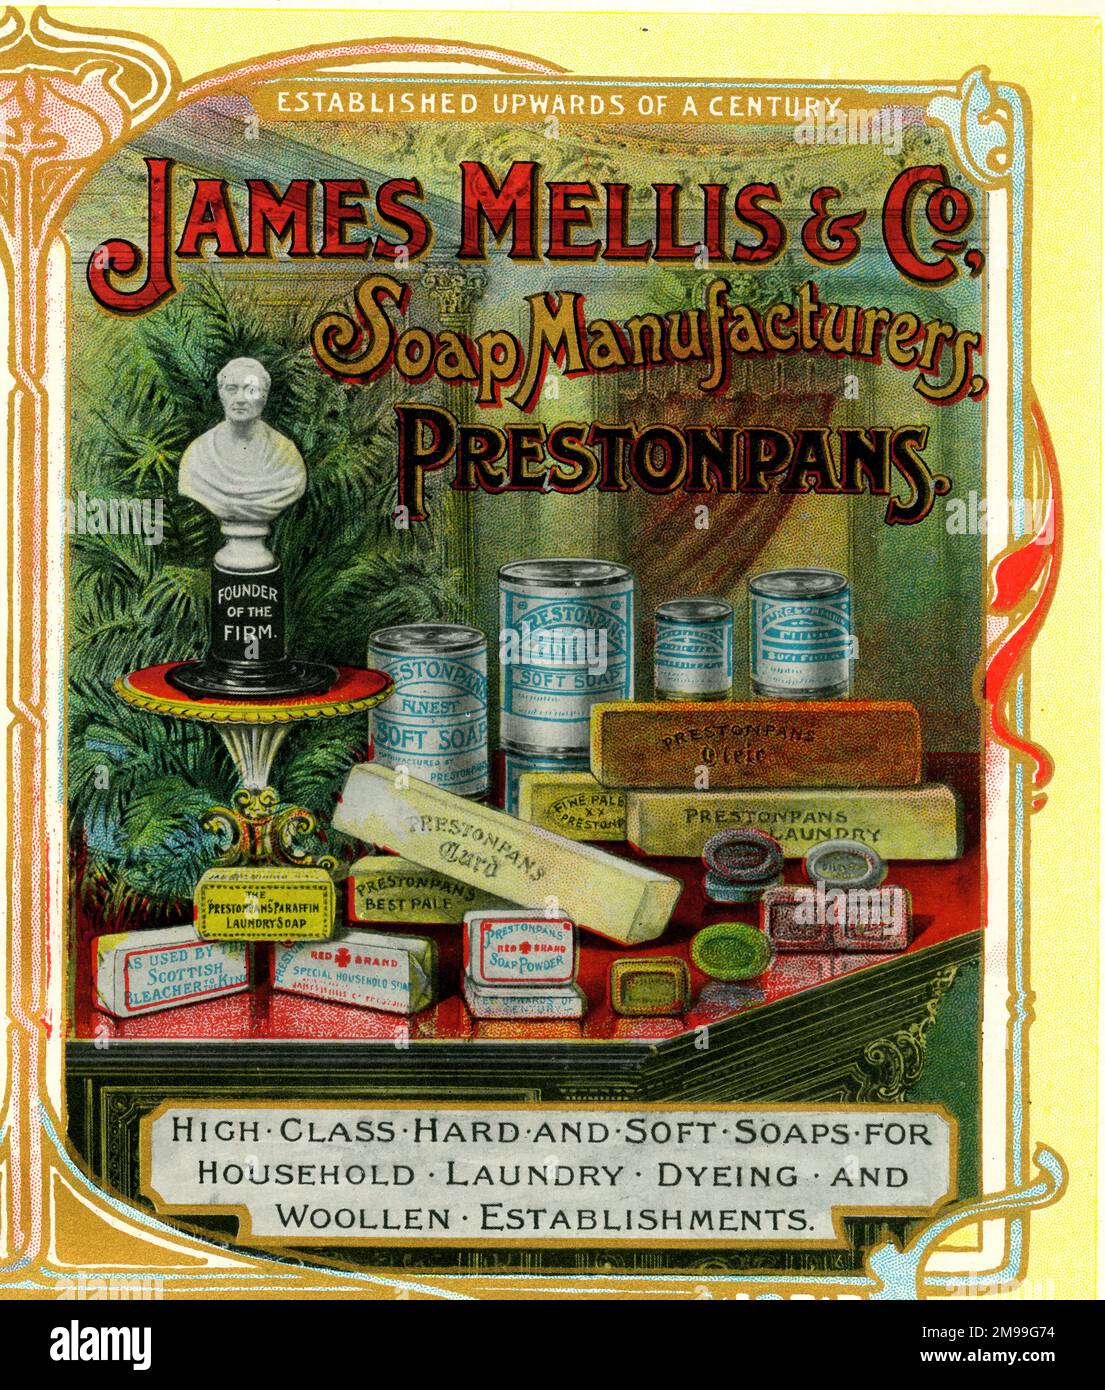 Advert for James Mellis & Co, Soap Manufacturers, Prestonpans, Scotland. Stock Photo